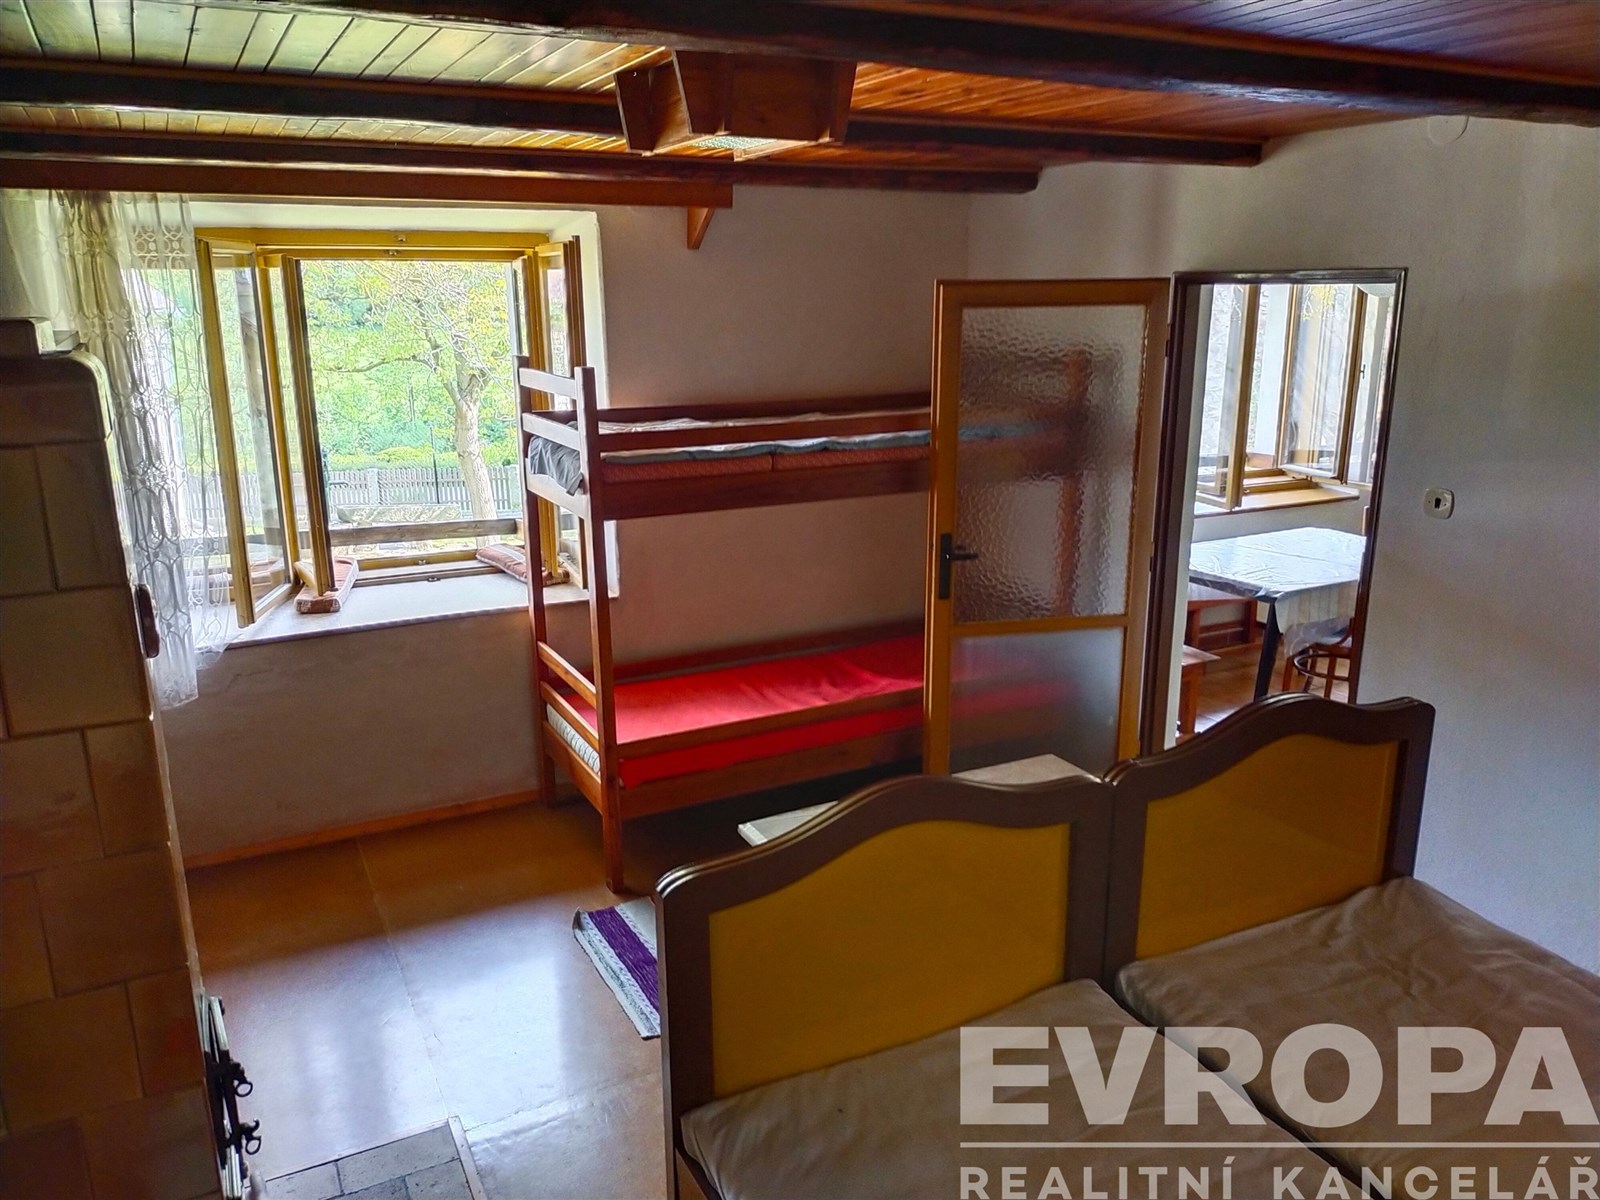 pokoj / ložnice s kachličková podlaha, přirozené světlo, a trámový strop